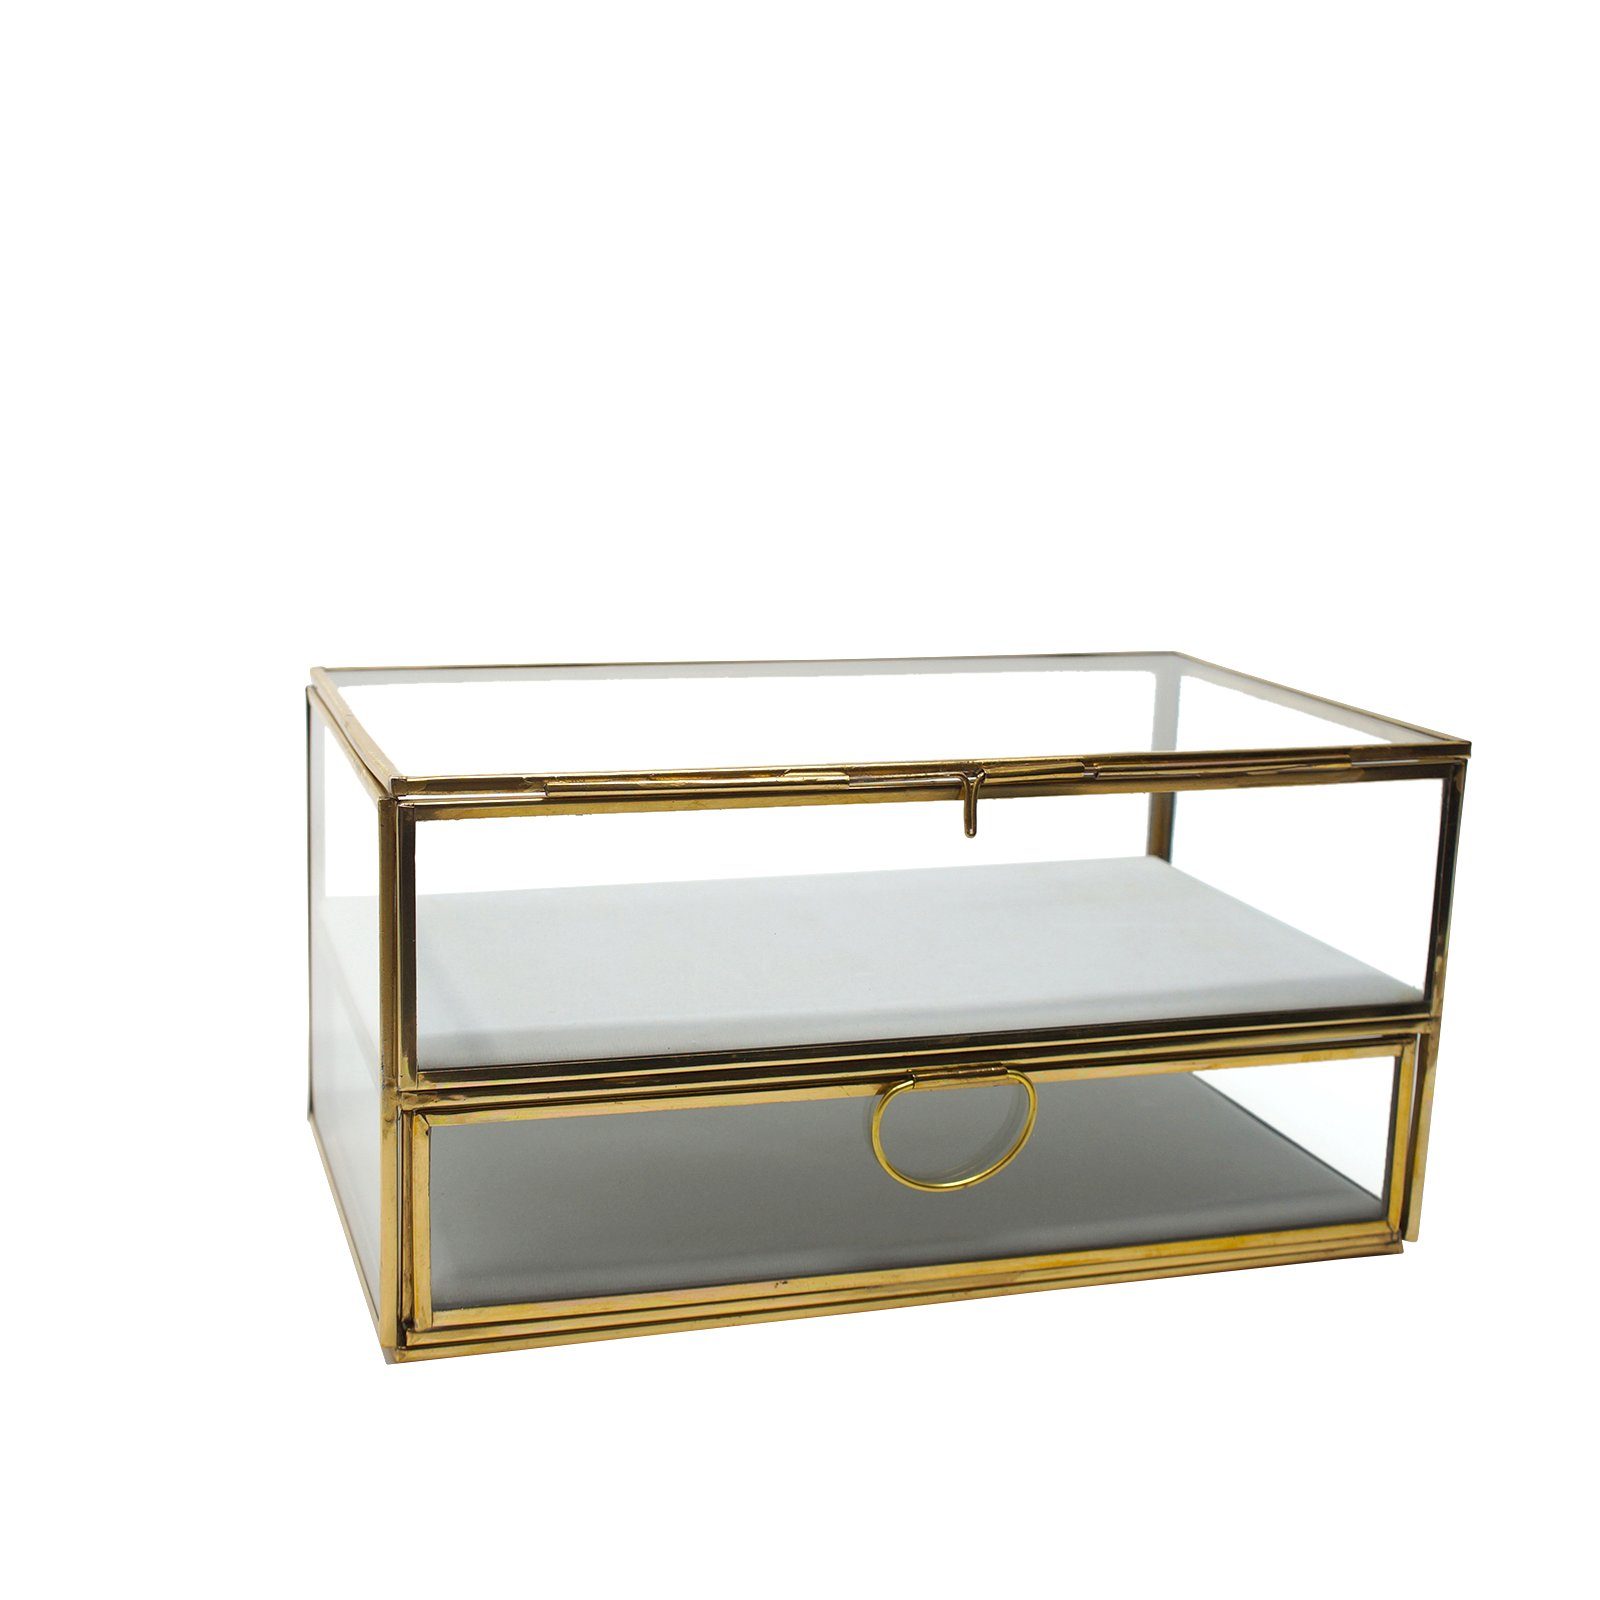 LaLe Living Schmuckkasten Lani in Gold, 26 x 15 cm, aus Eisen und Glas mit Schublade und Tür zum Öffnen